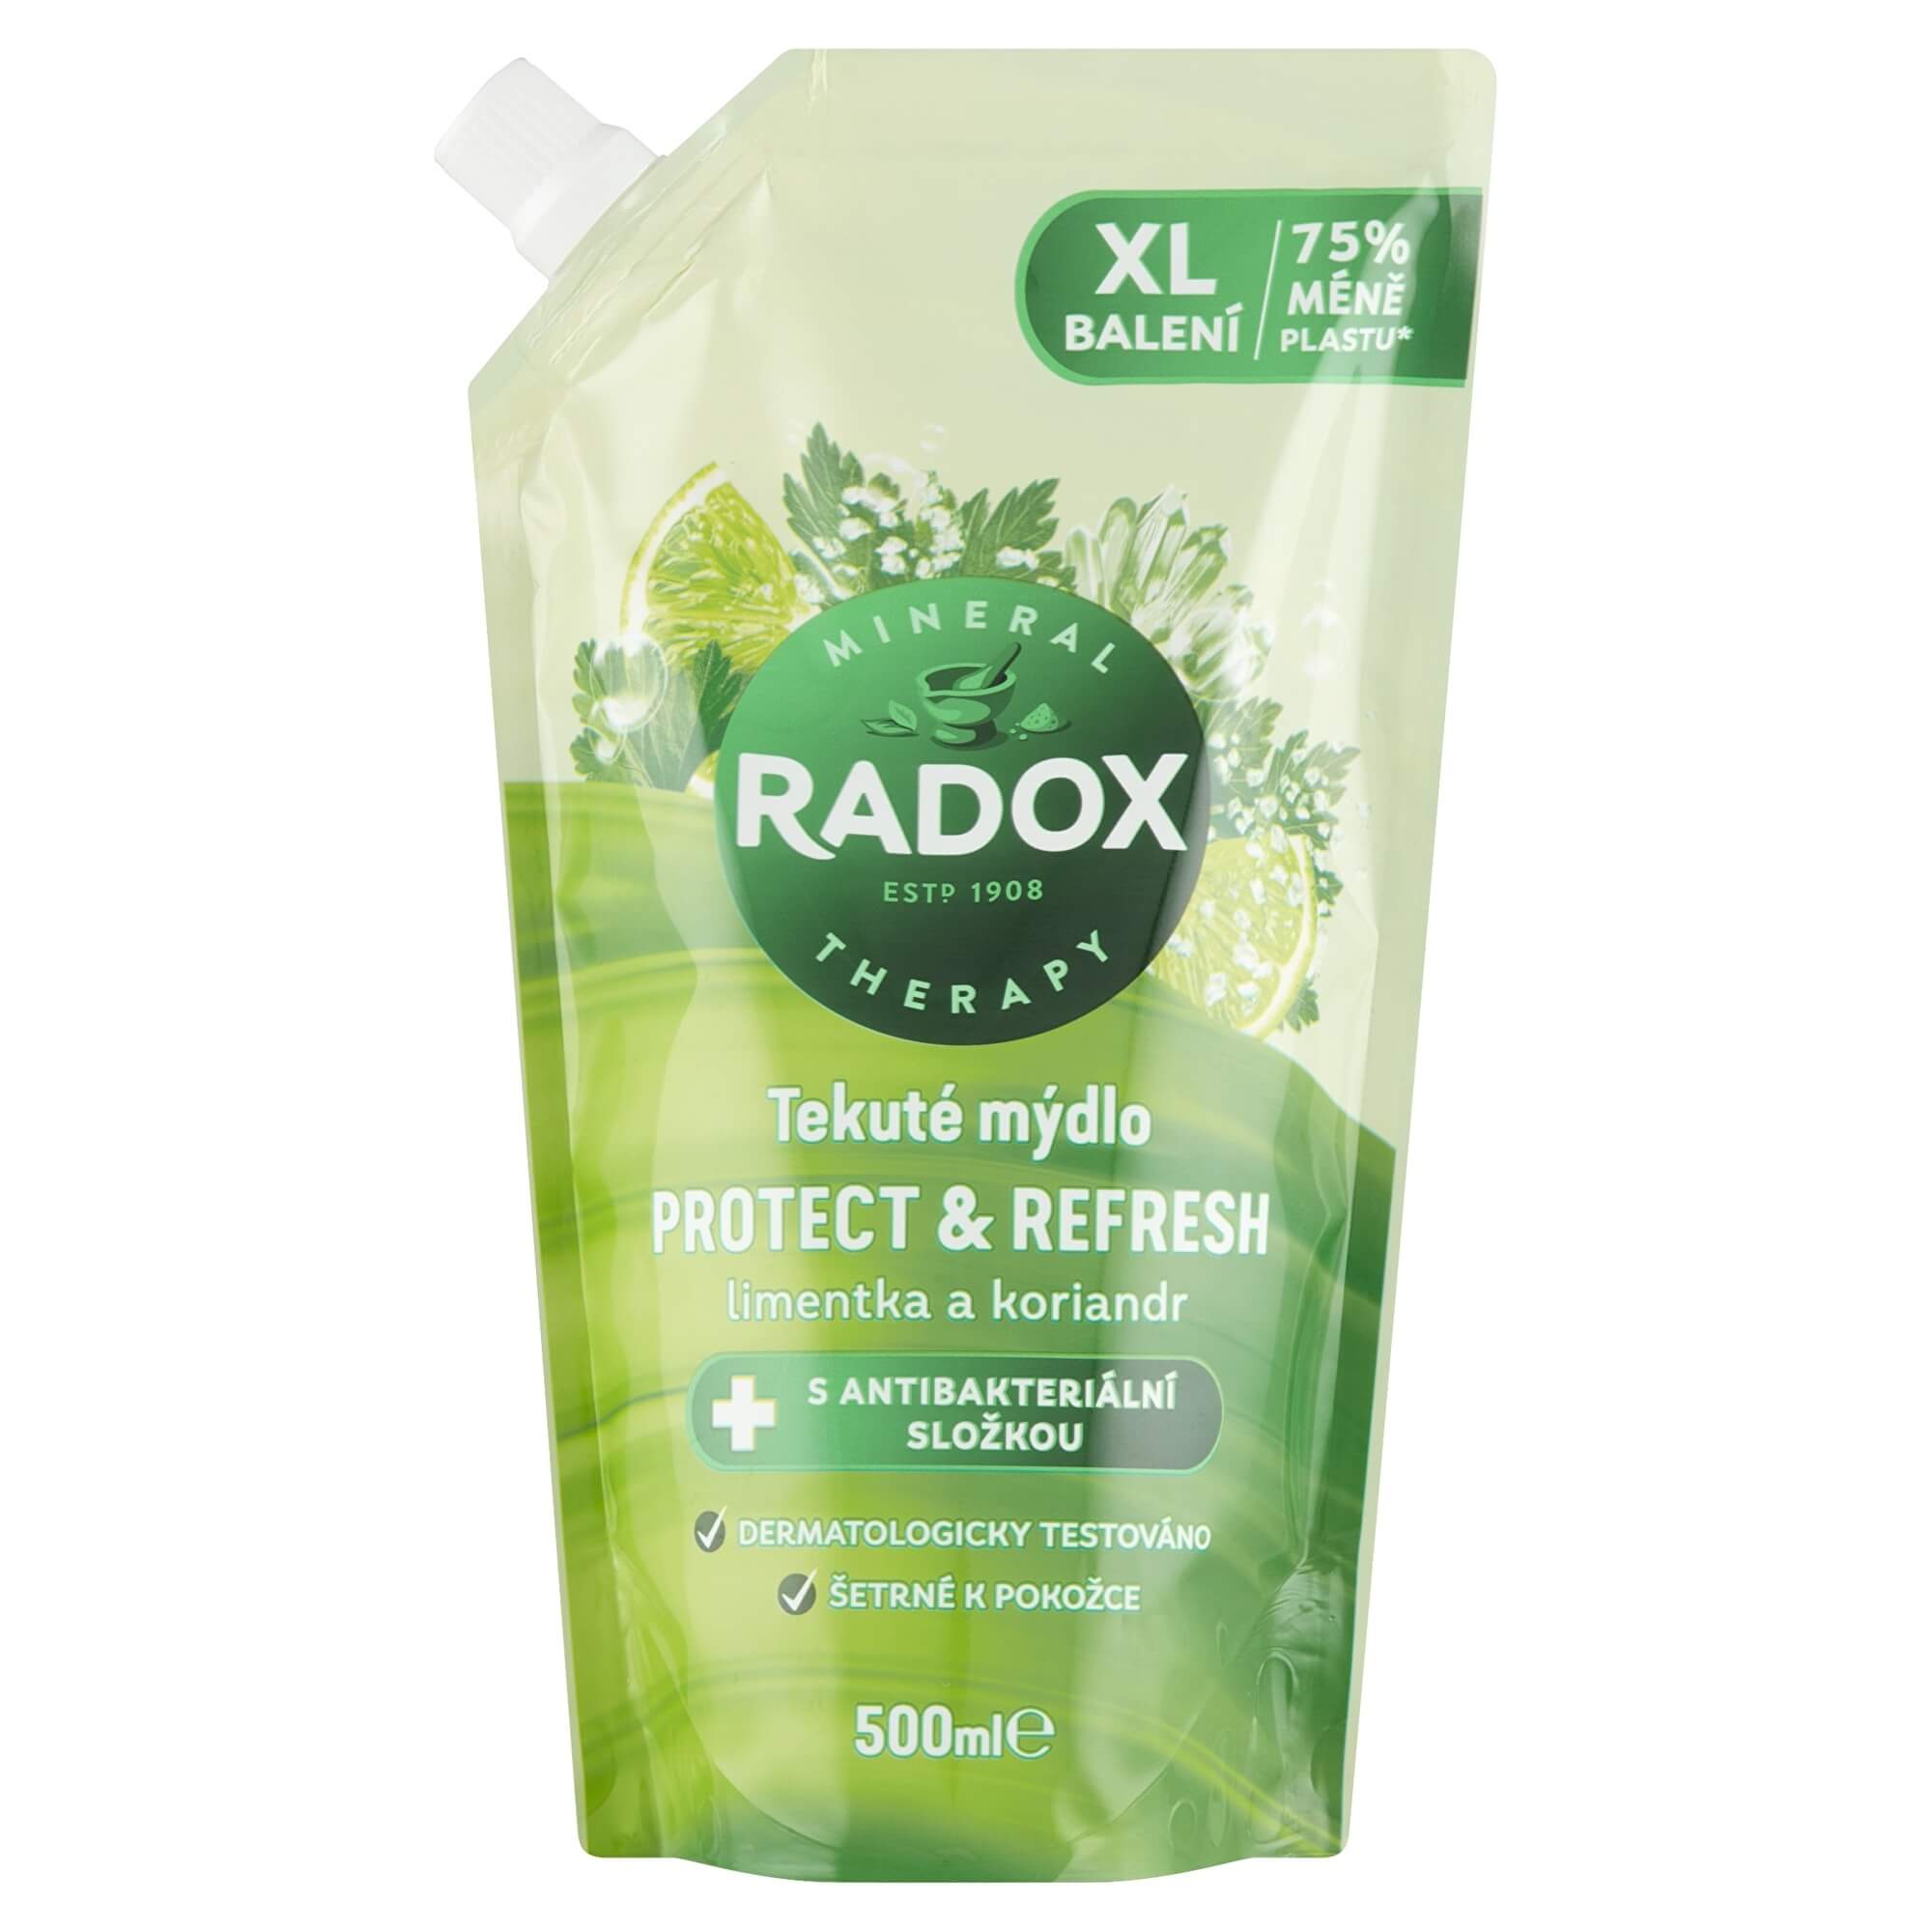 Radox Tekuté mýdlo s antibakteriální složkou Protect & Refresh - náhradní náplň 500 ml